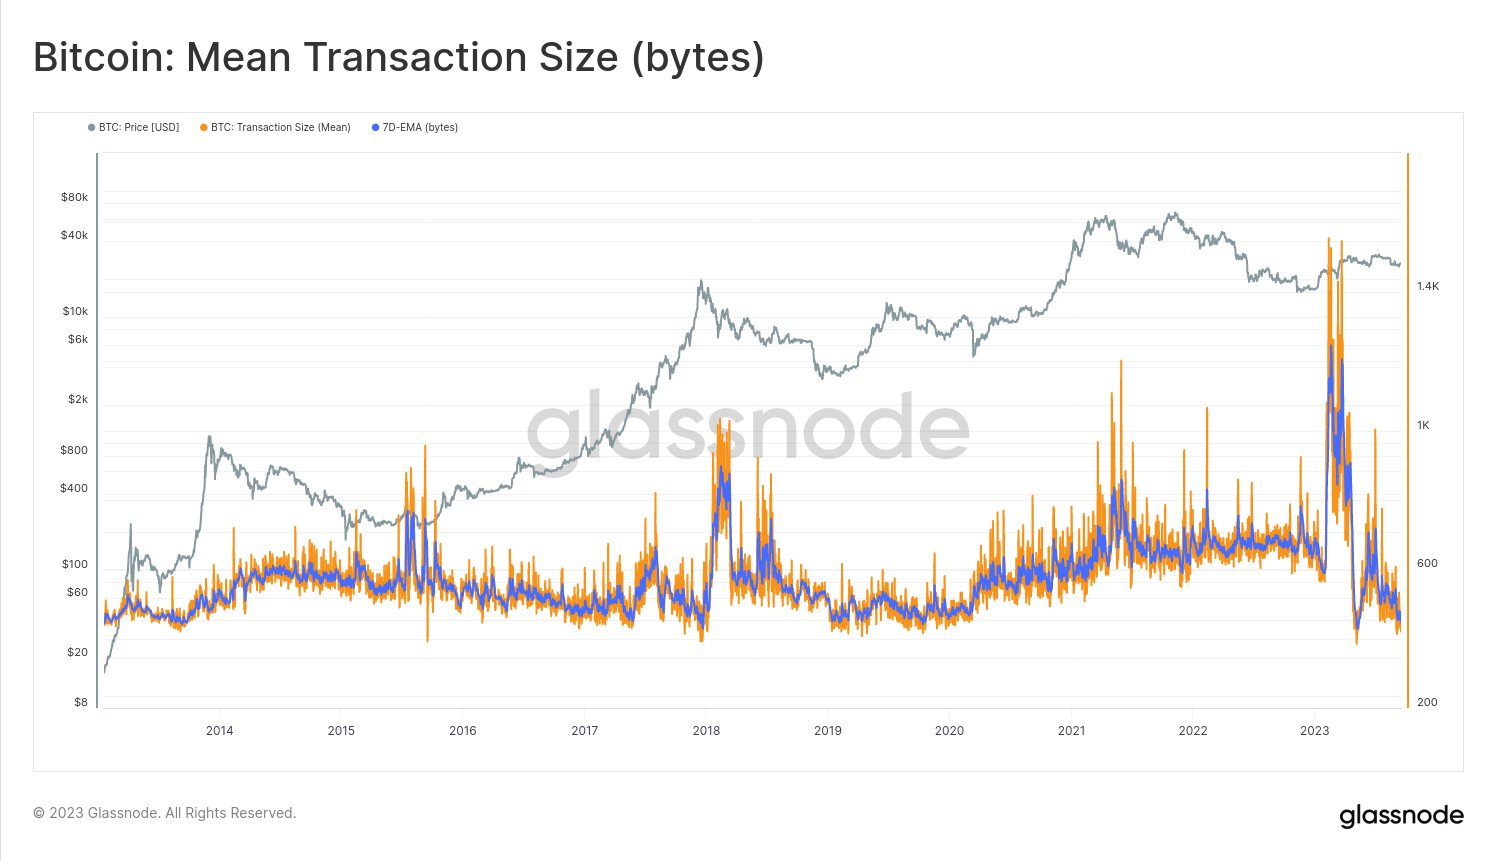 Bitcoin mean transaction size